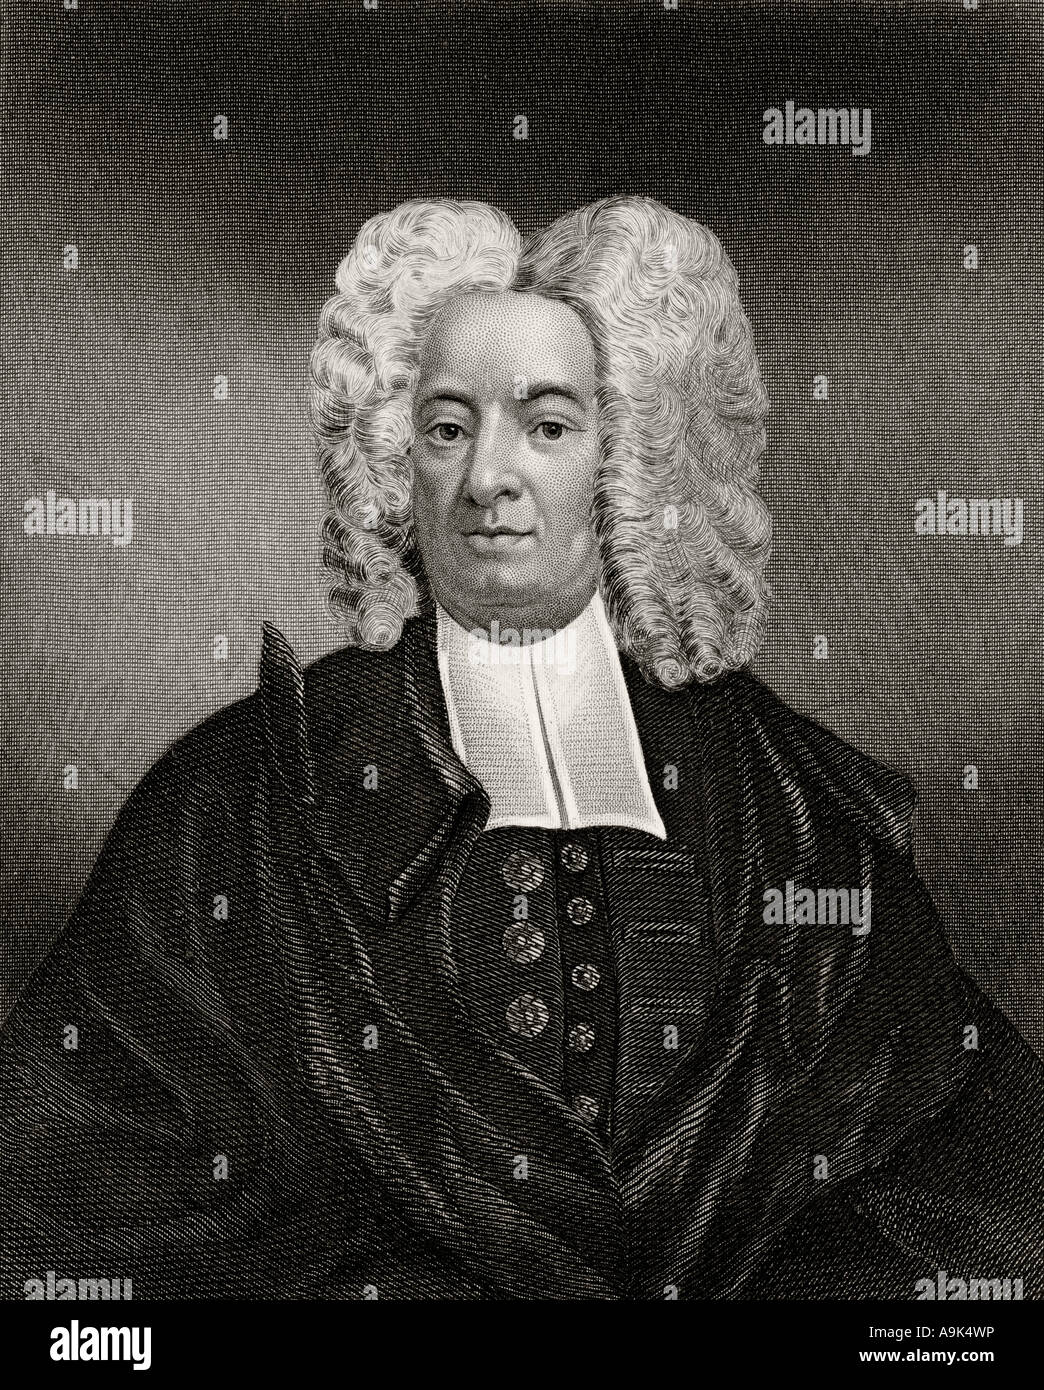 Mather cotone, 1663 - 1728. Ministro puritano americano. Foto Stock